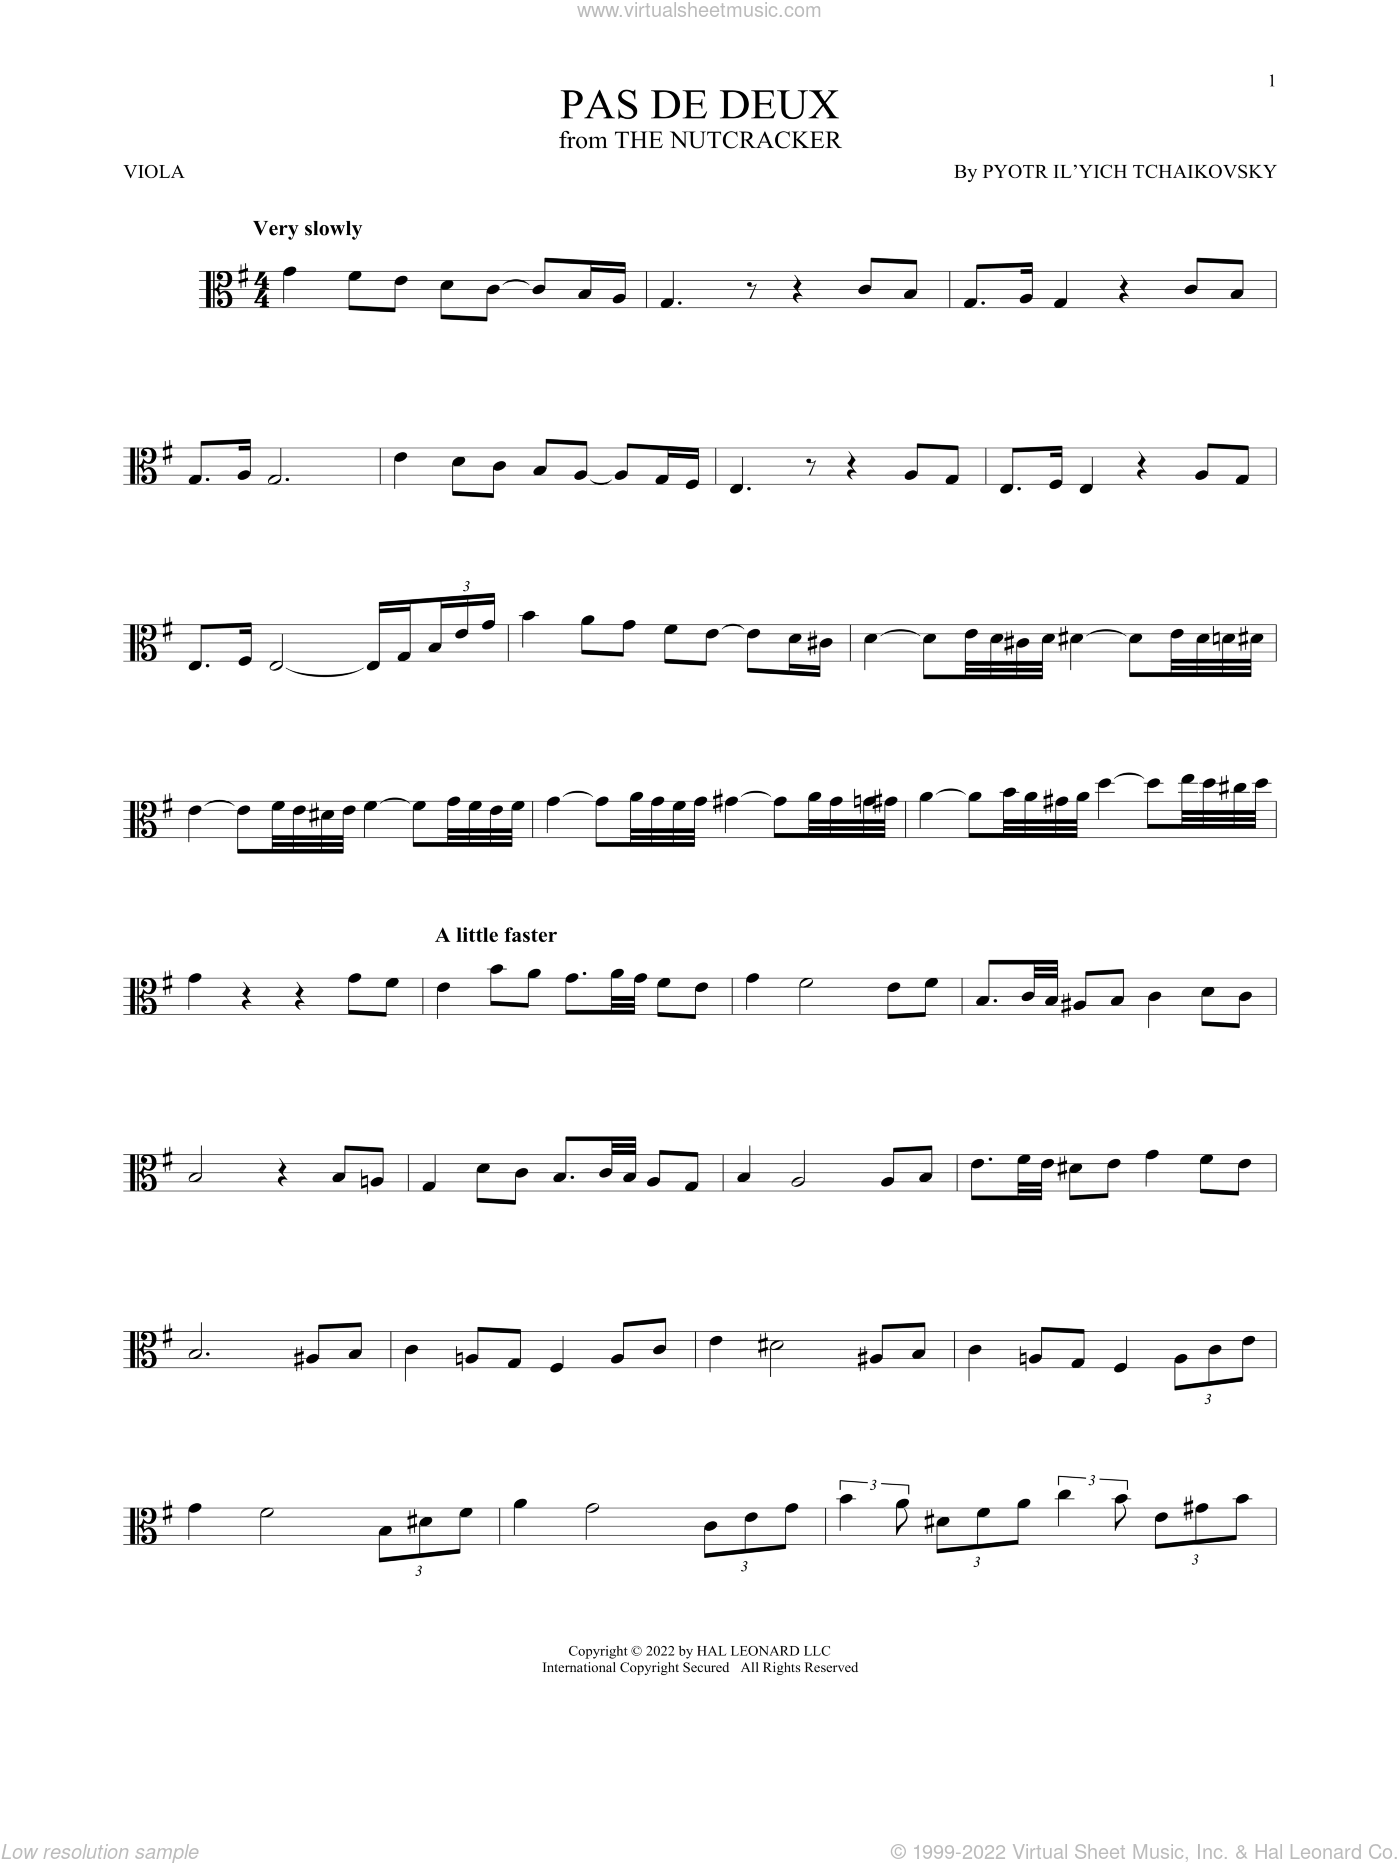 1812 Overture: Viola: Viola Part - Digital Sheet Music Download